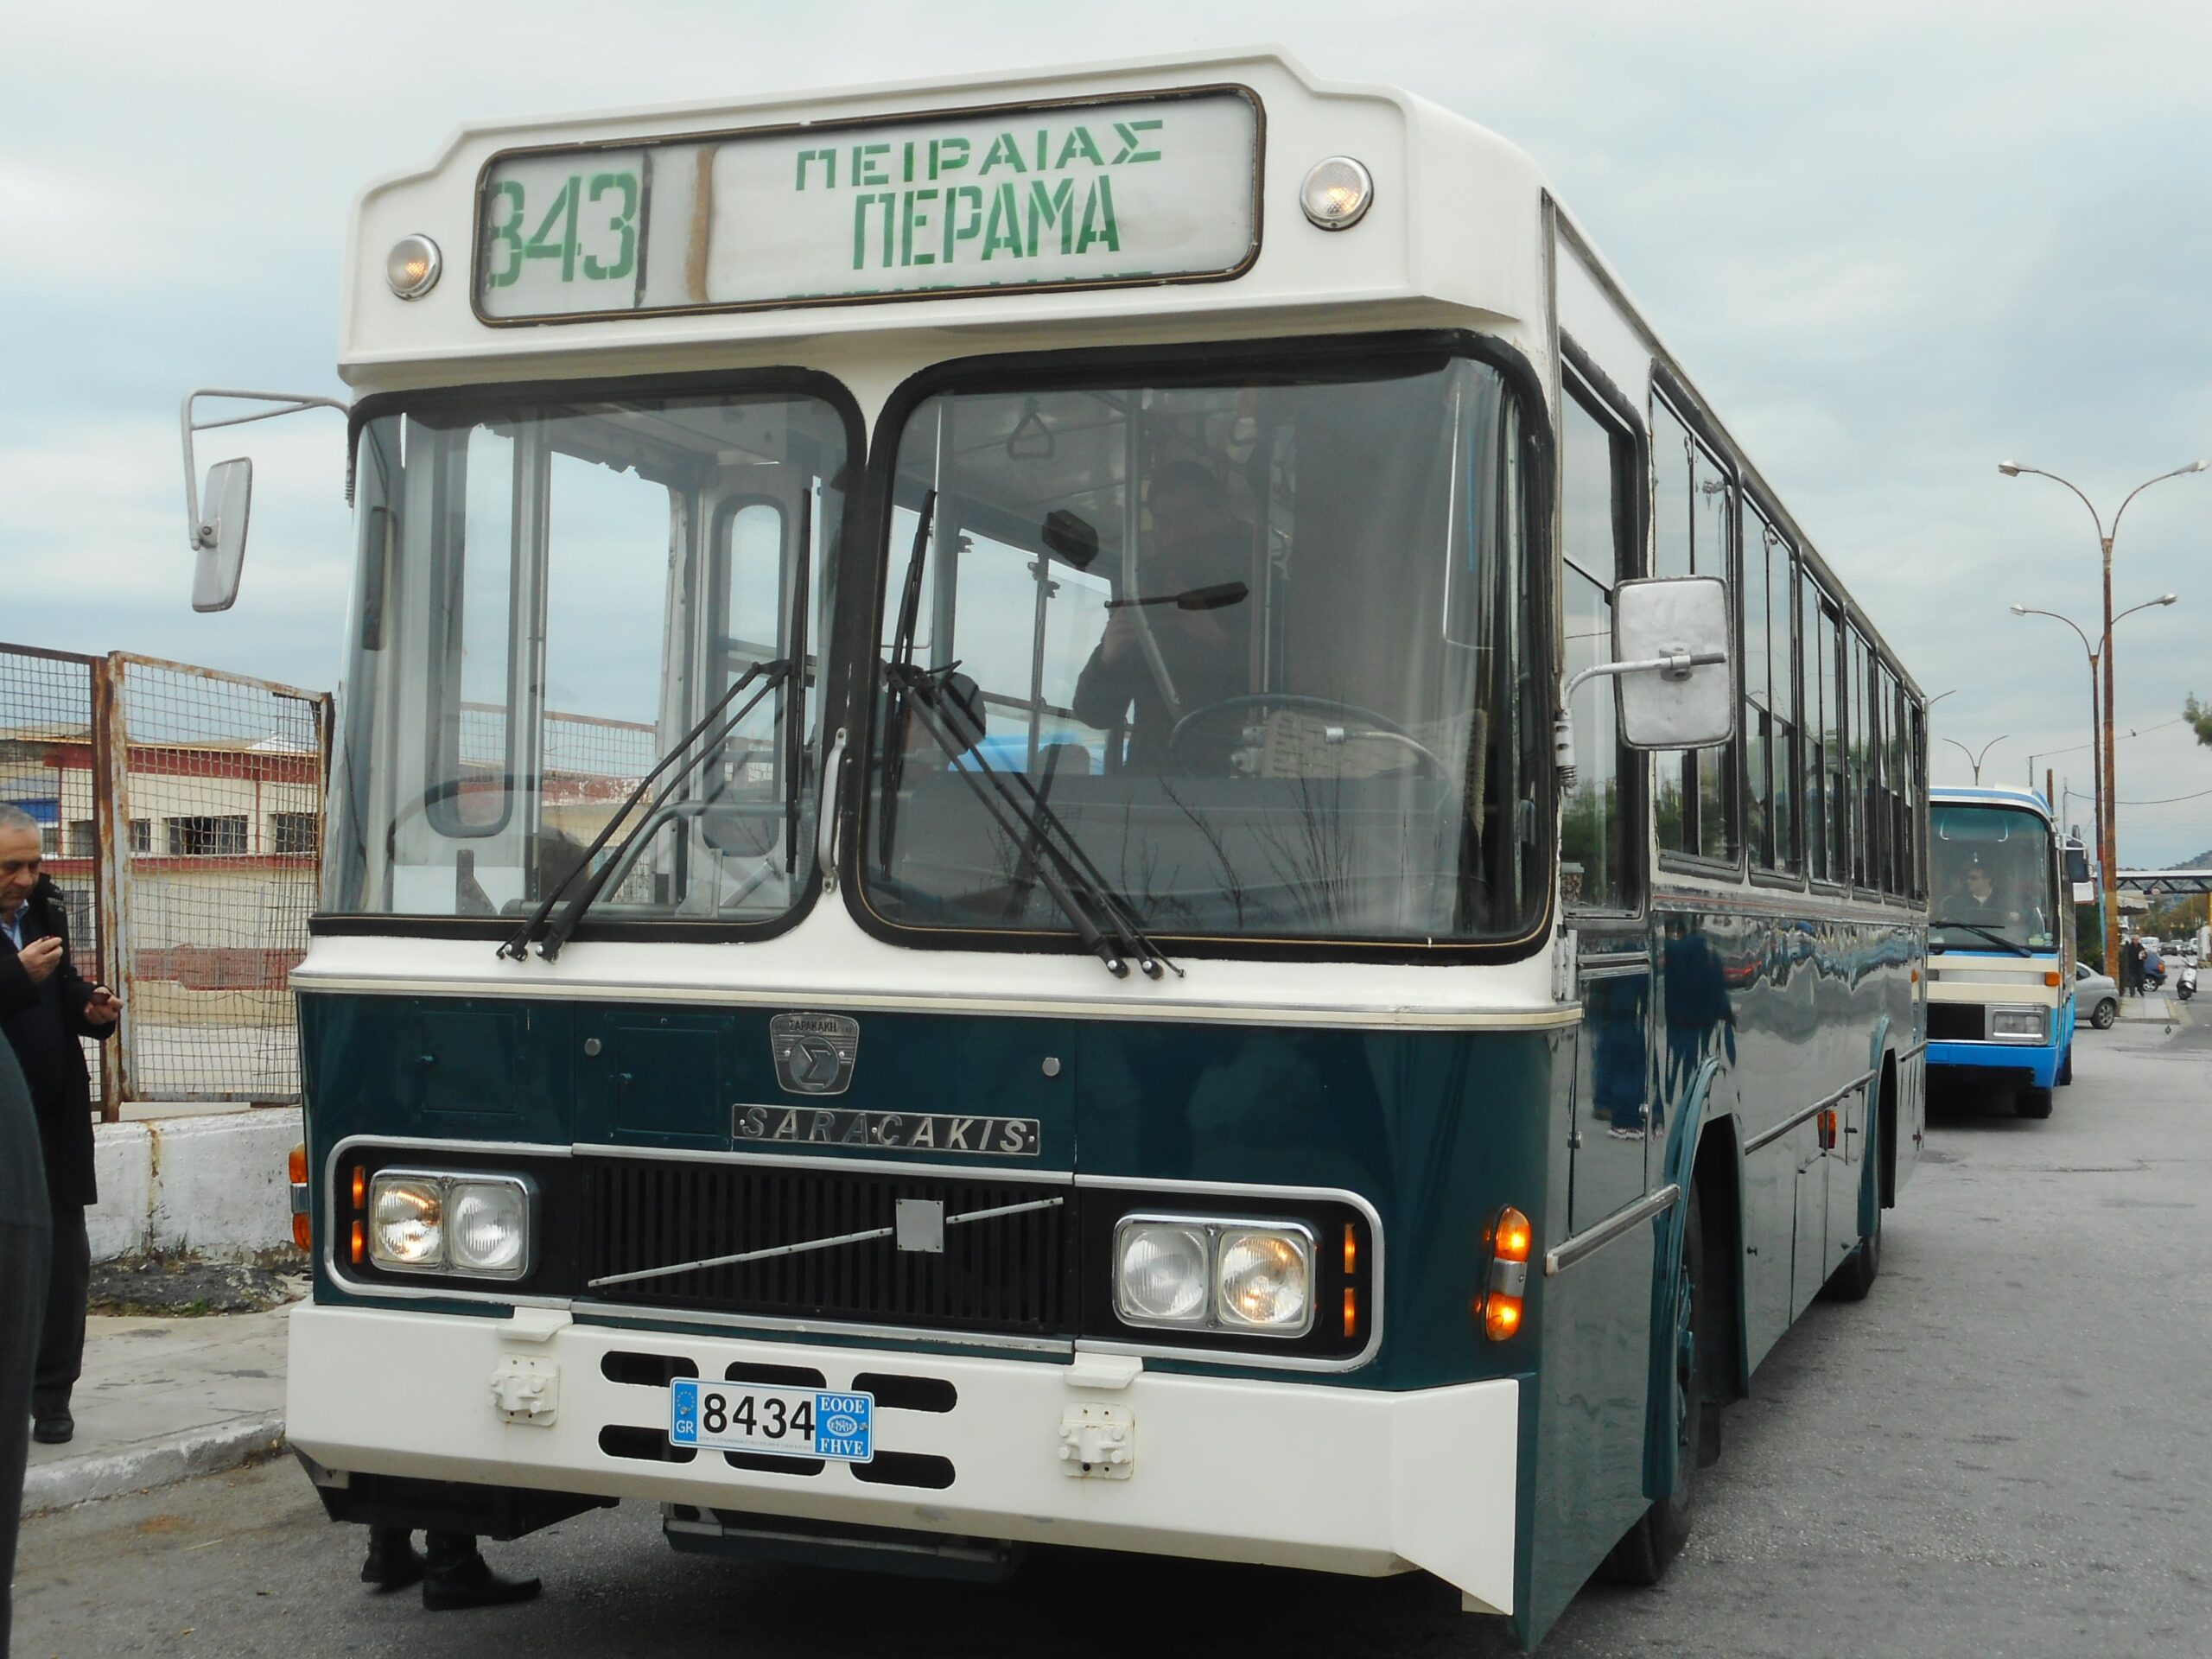 Το ιστορικό “πράσινο” λεωφορείο 843 Πειραιάς-Πέραμα